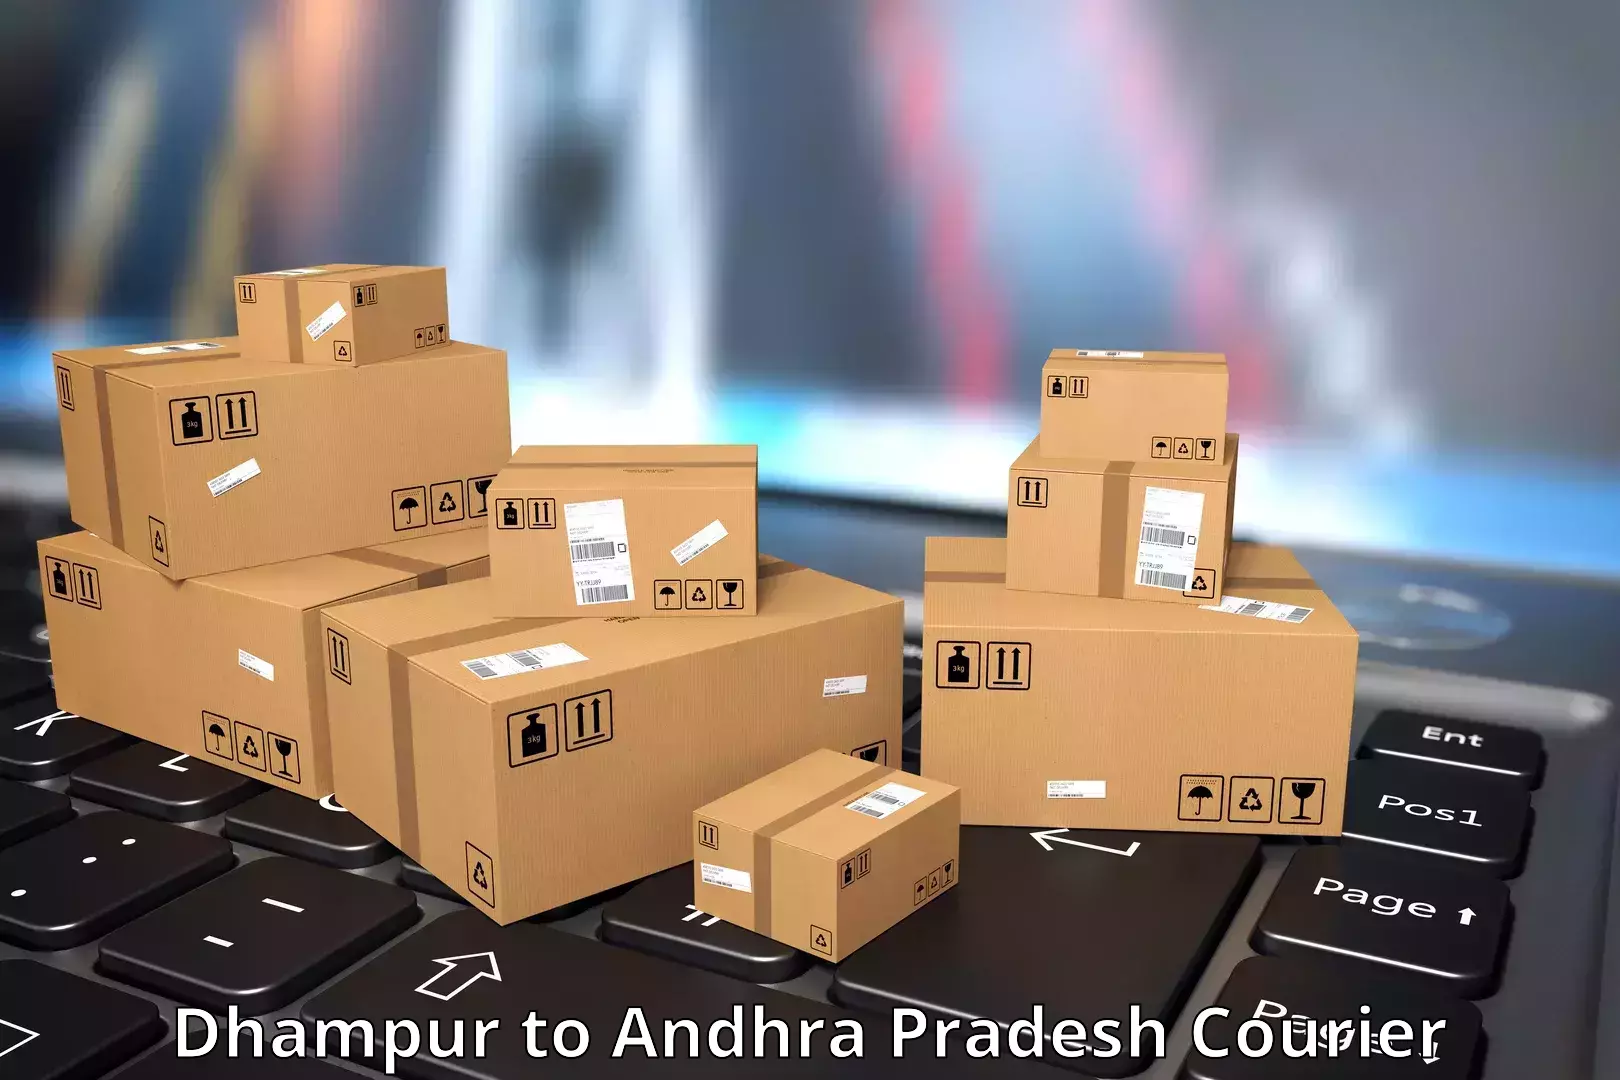 Premium delivery services Dhampur to Tada Tirupati